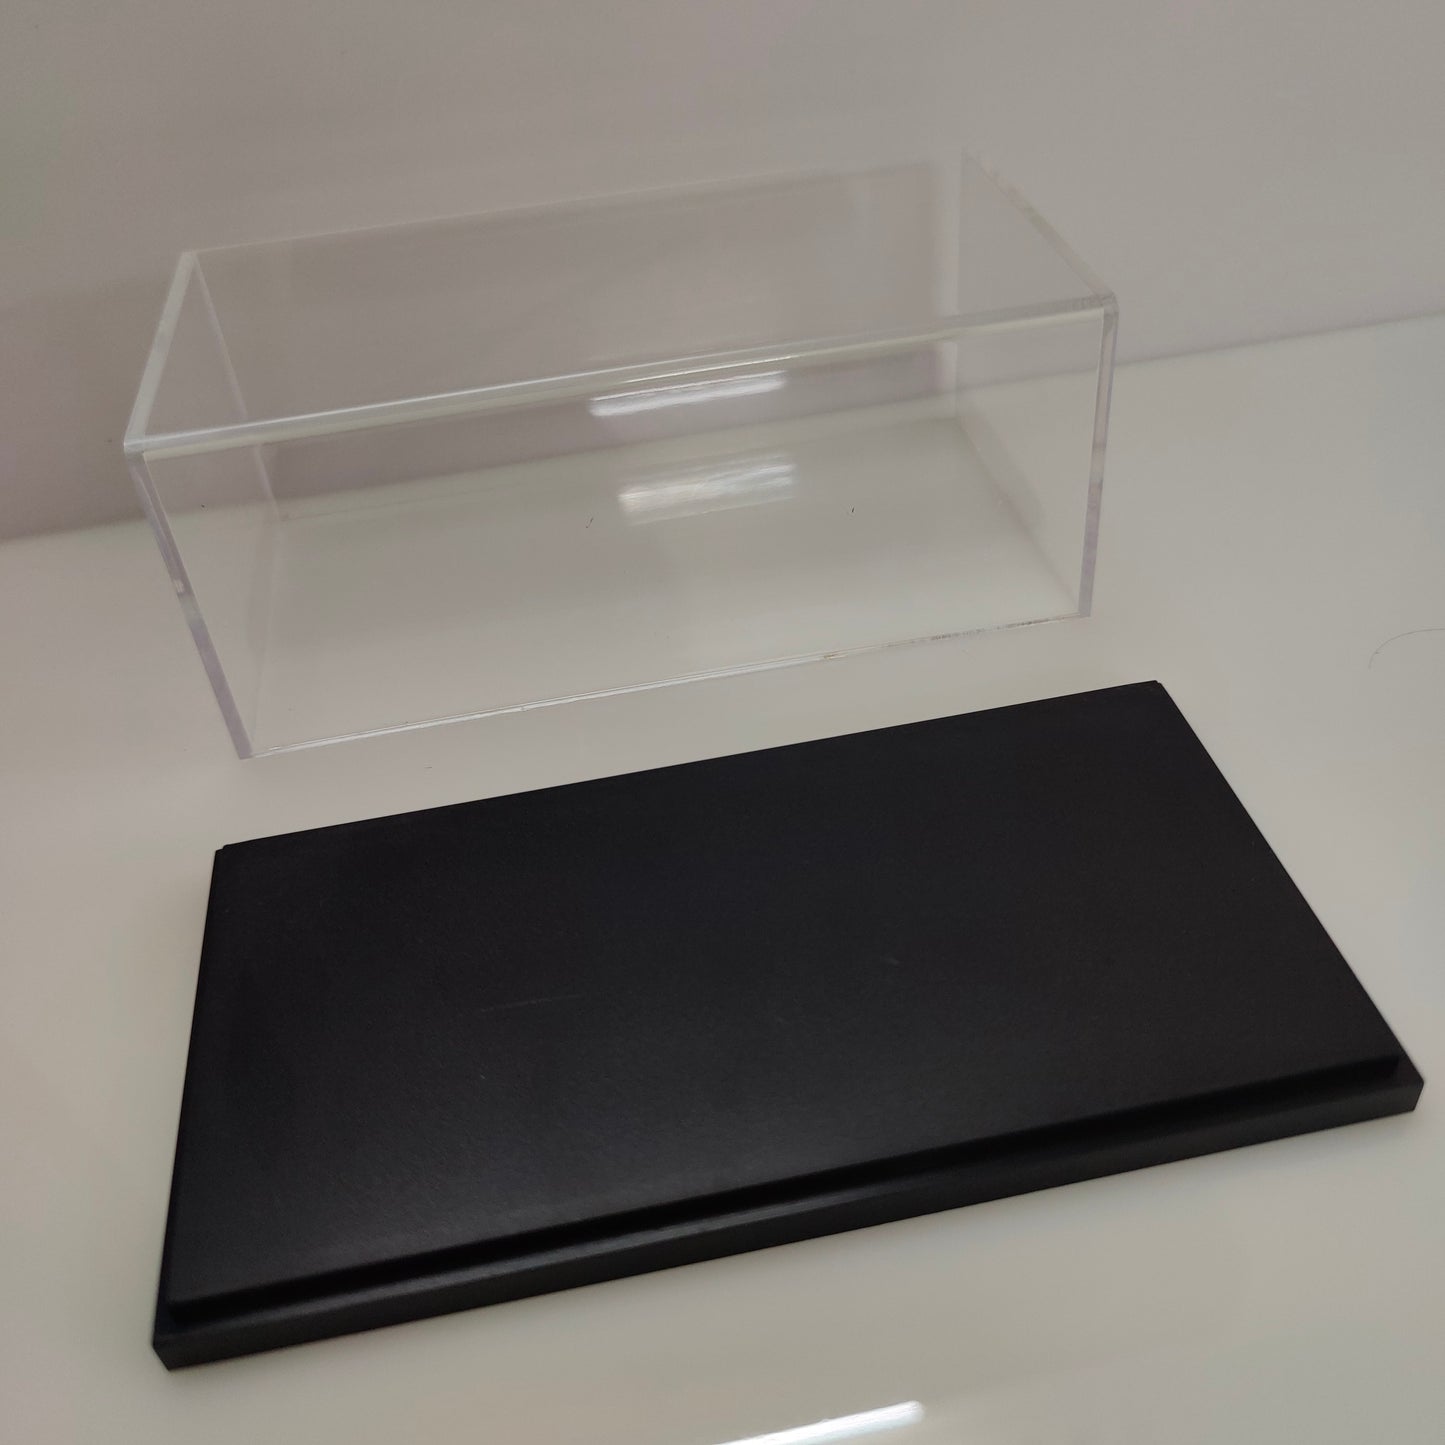 Protective Acrylic Case Hard Cover Display Box | Escala 1:43 1:64